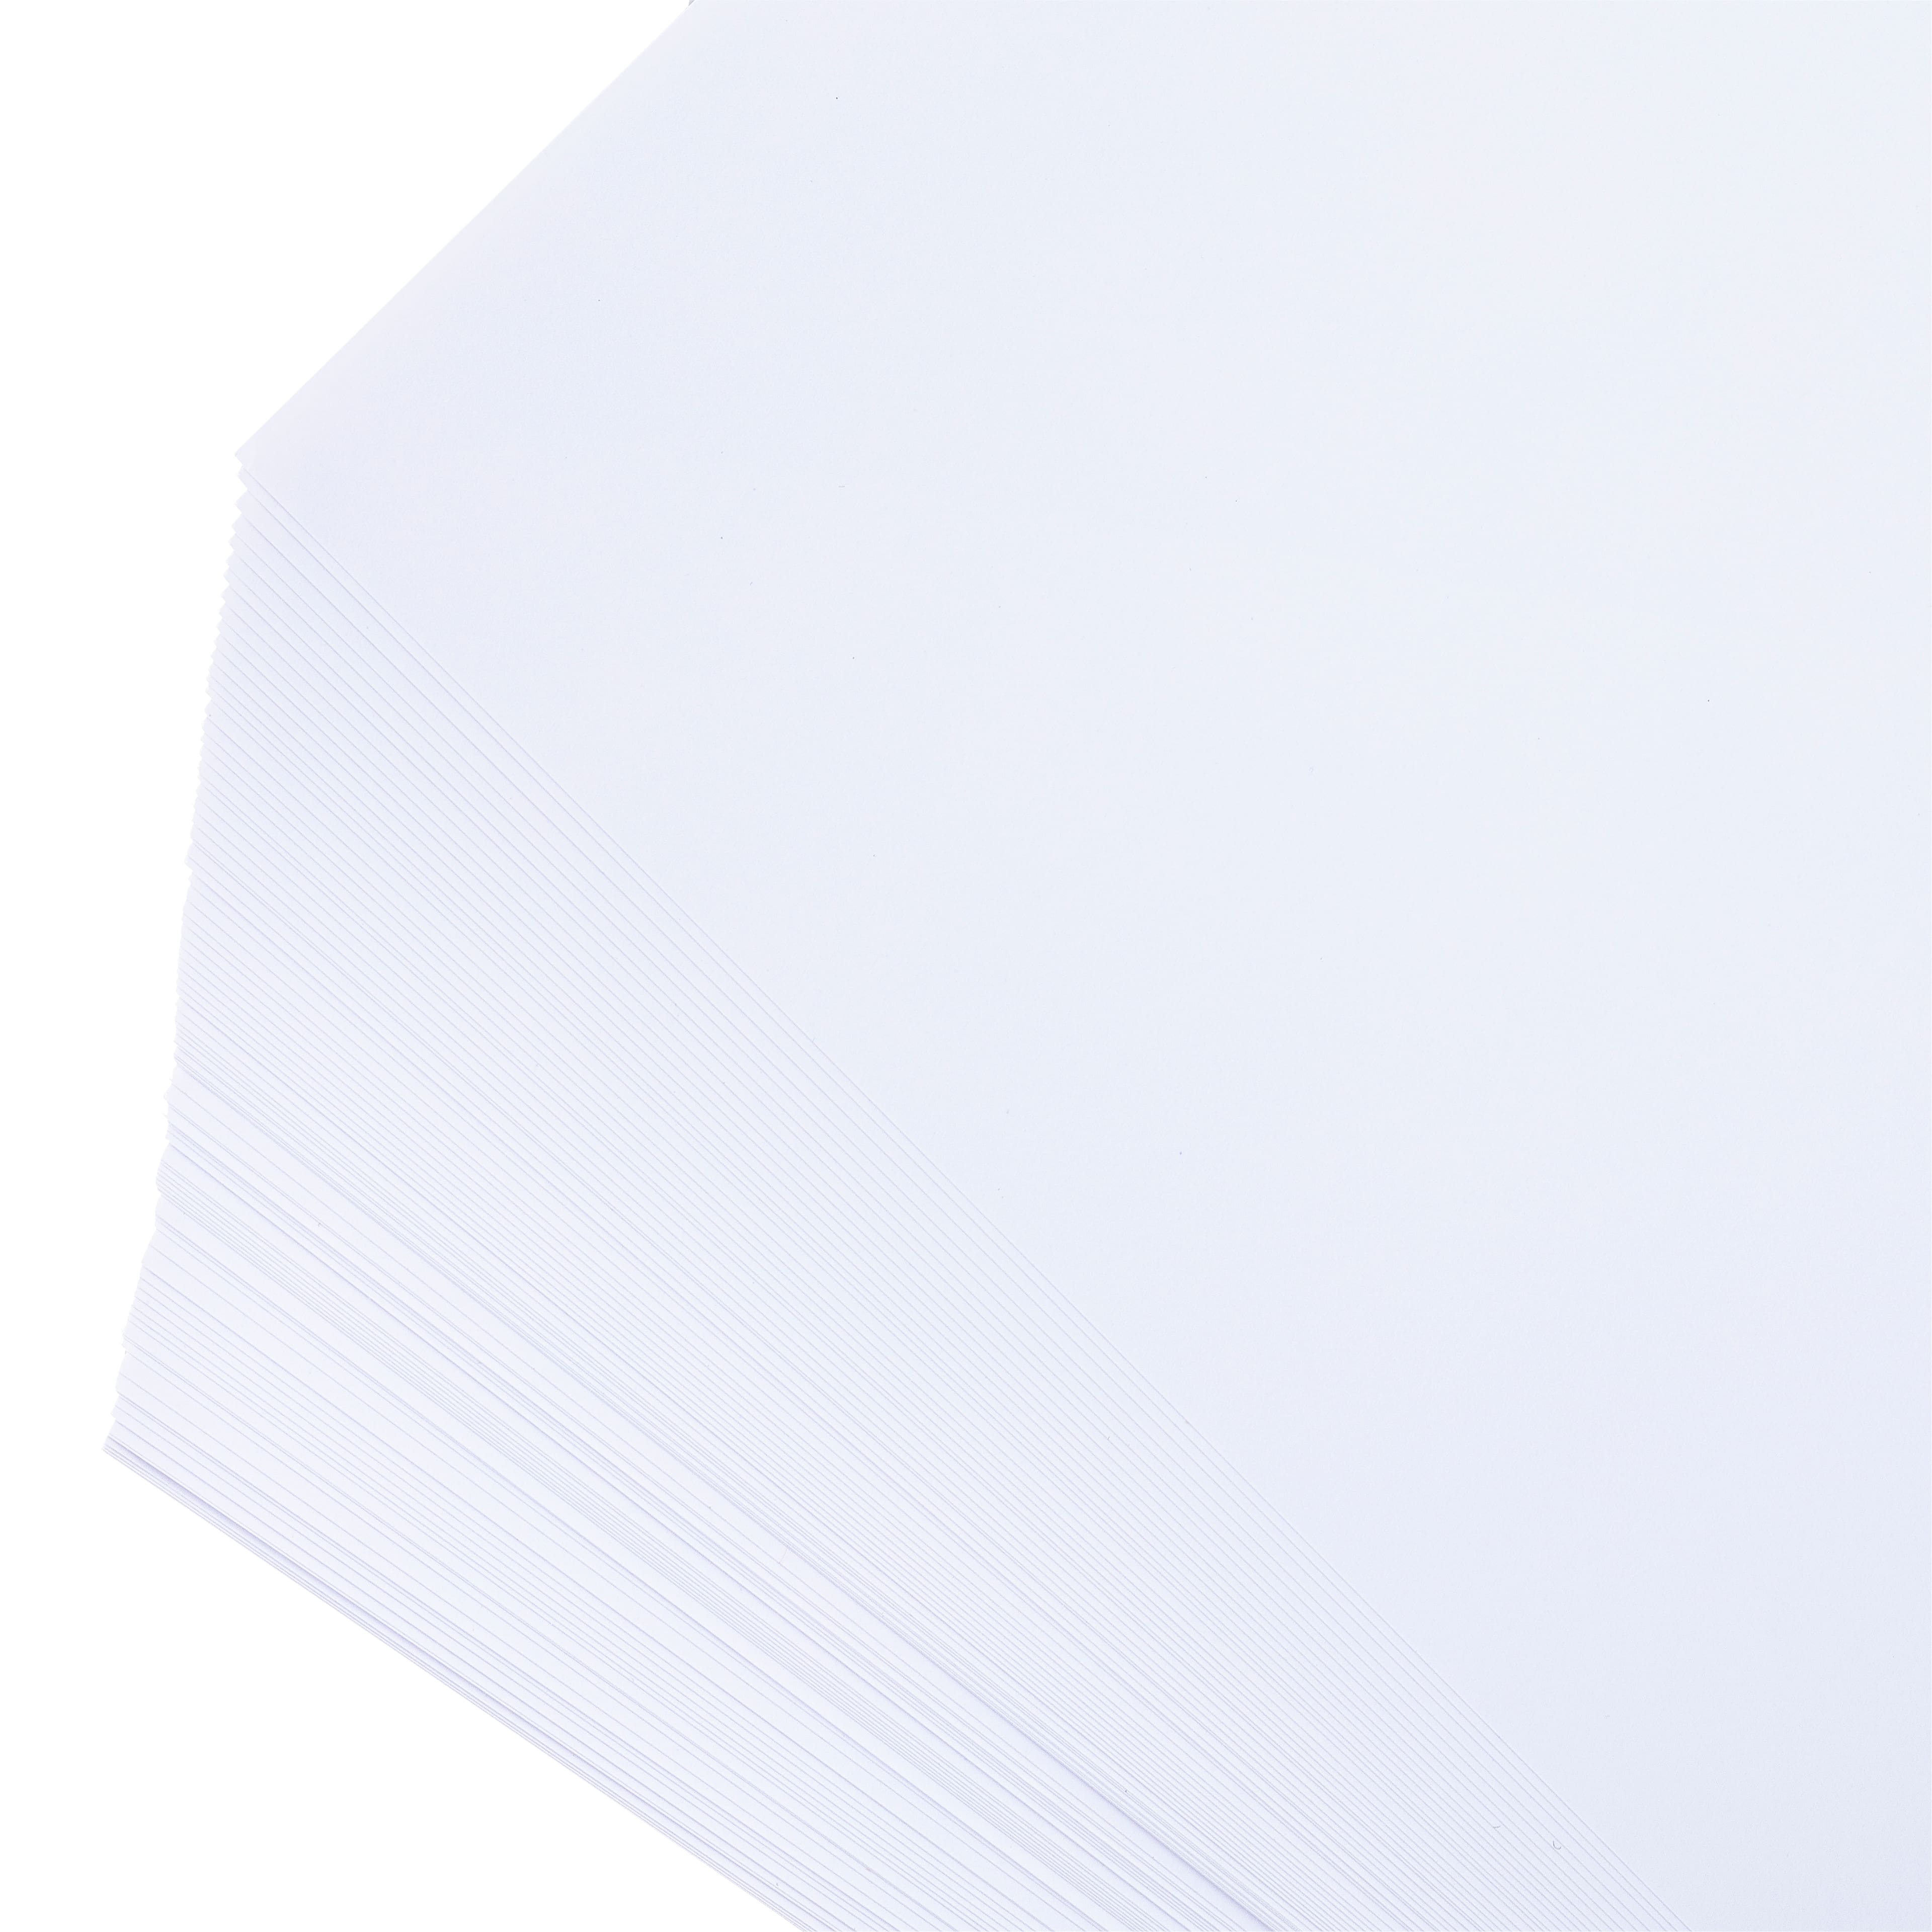 True Pix Classic Sublimation Paper 100 Sheets